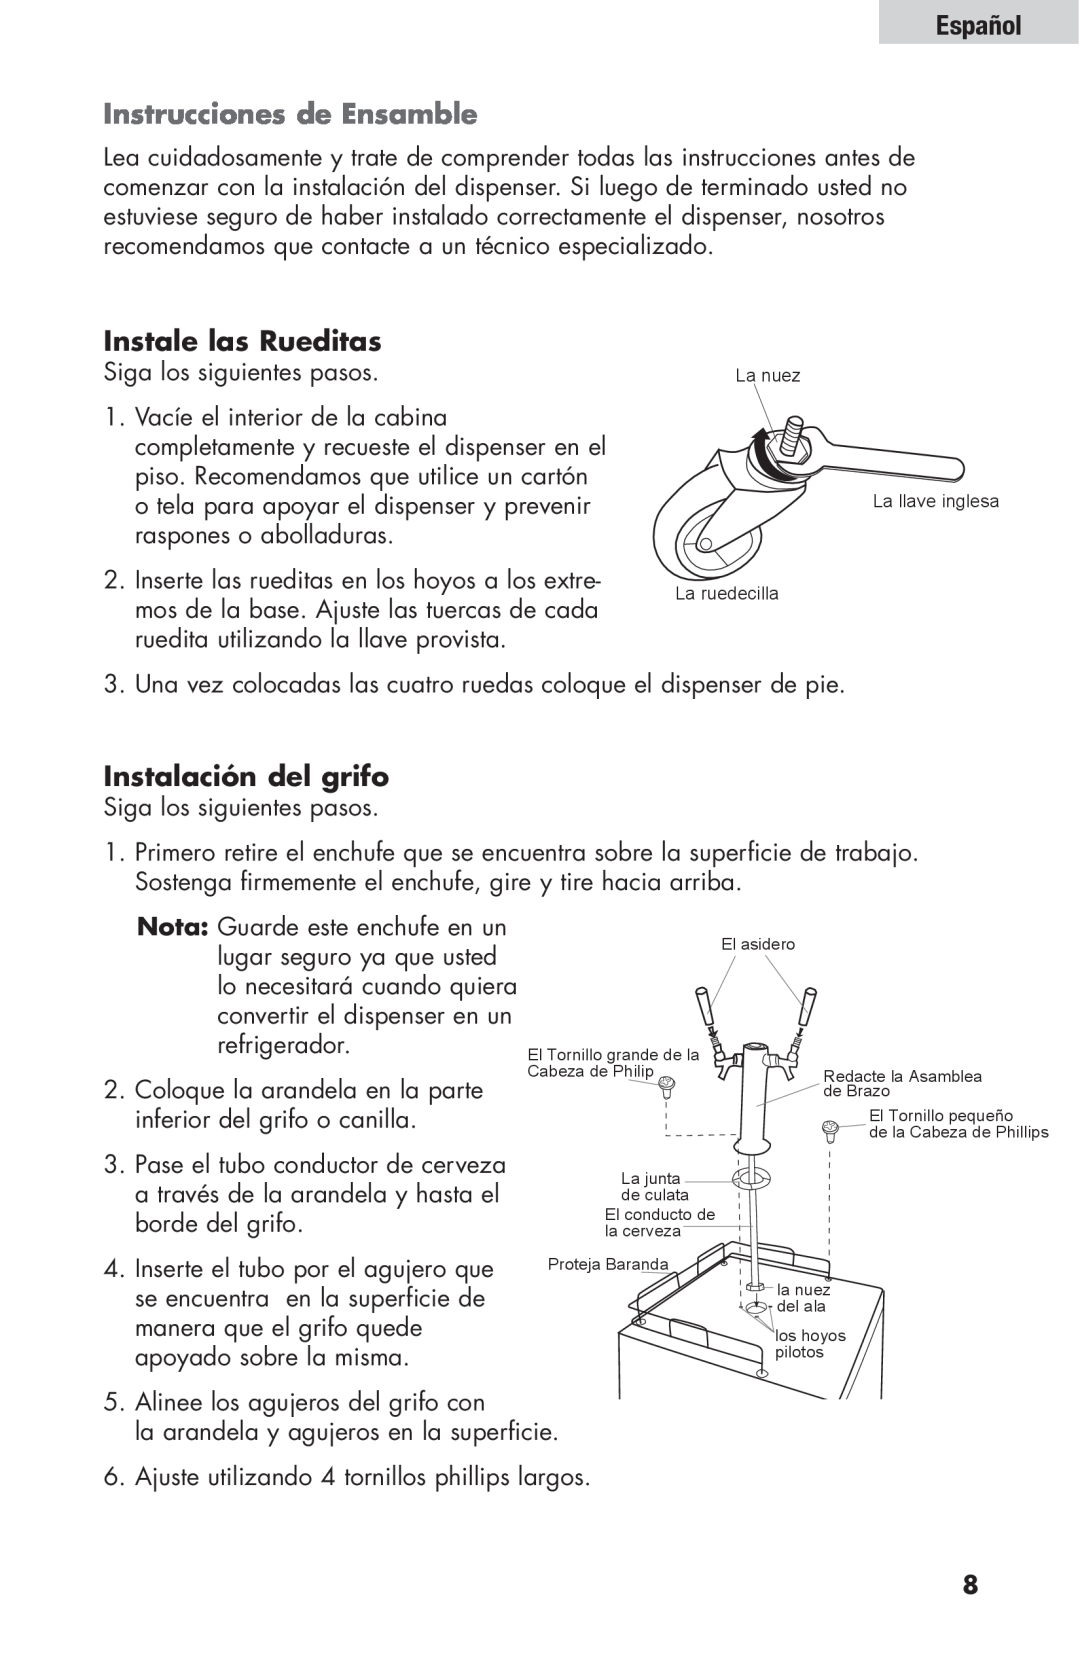 Haier HBF205E user manual Instrucciones de Ensamble, Instale las Rueditas, Instalación del grifo, Español 